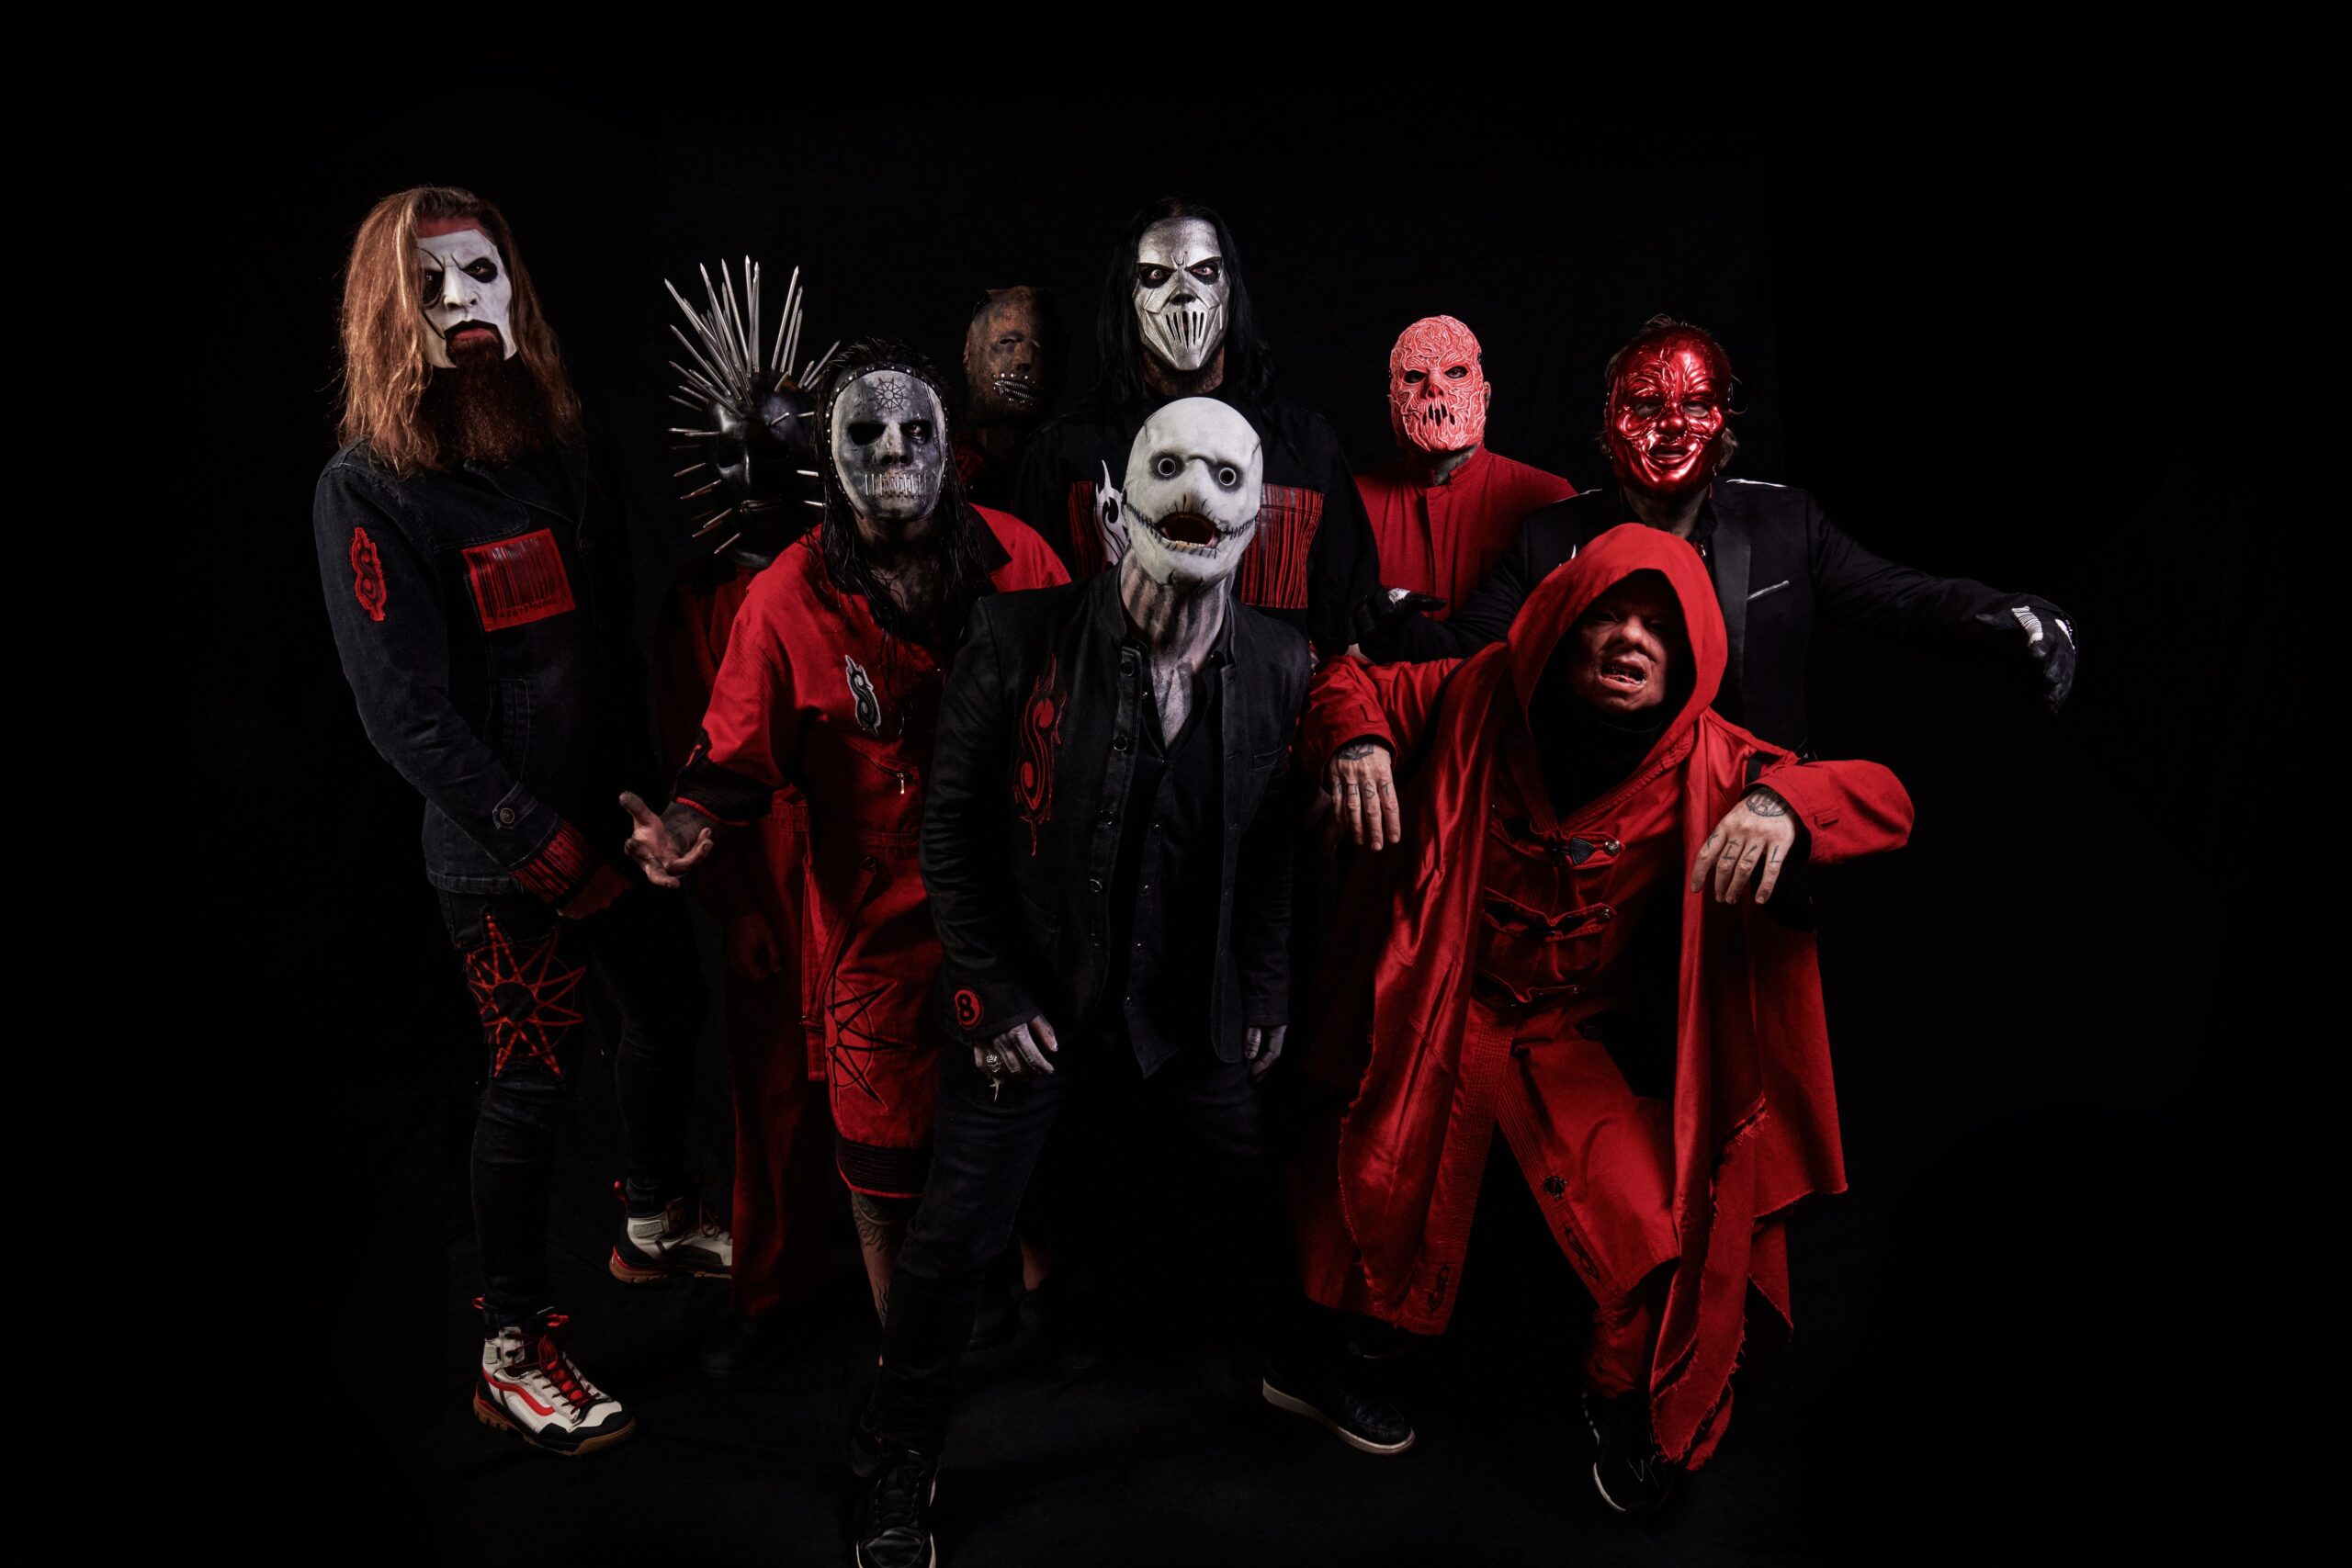 Masken, Pyro, Wahnwitz: Slipknot spielen Freitagabend (22.15 Uhr) ihre Premiere auf dem Wacken Open Air.